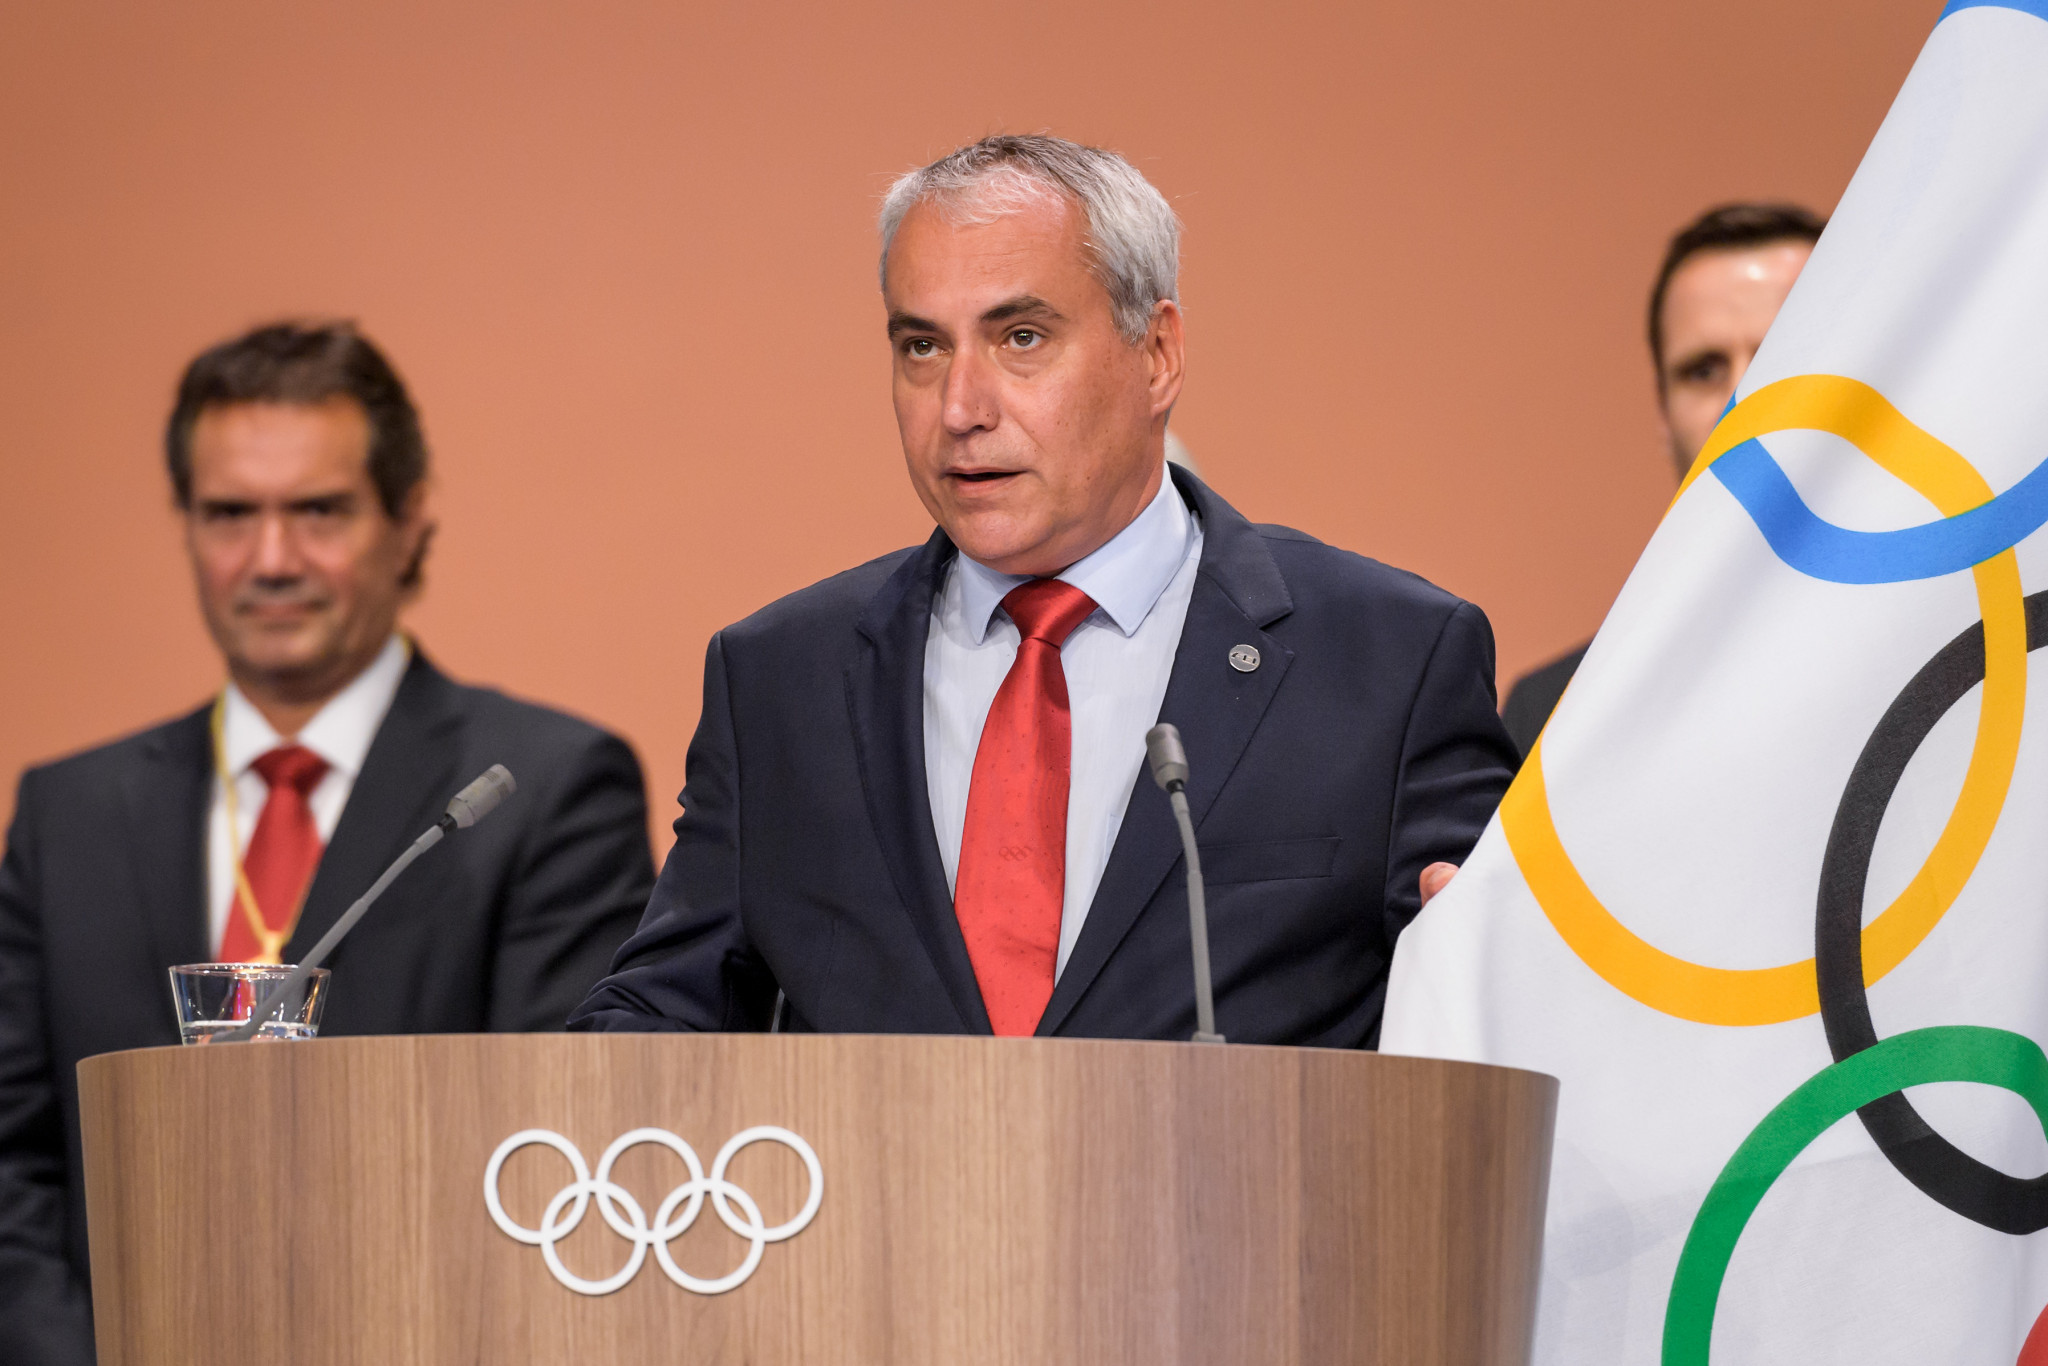 Ingmar De Vos has been an IOC member since 2017 ©Getty Images